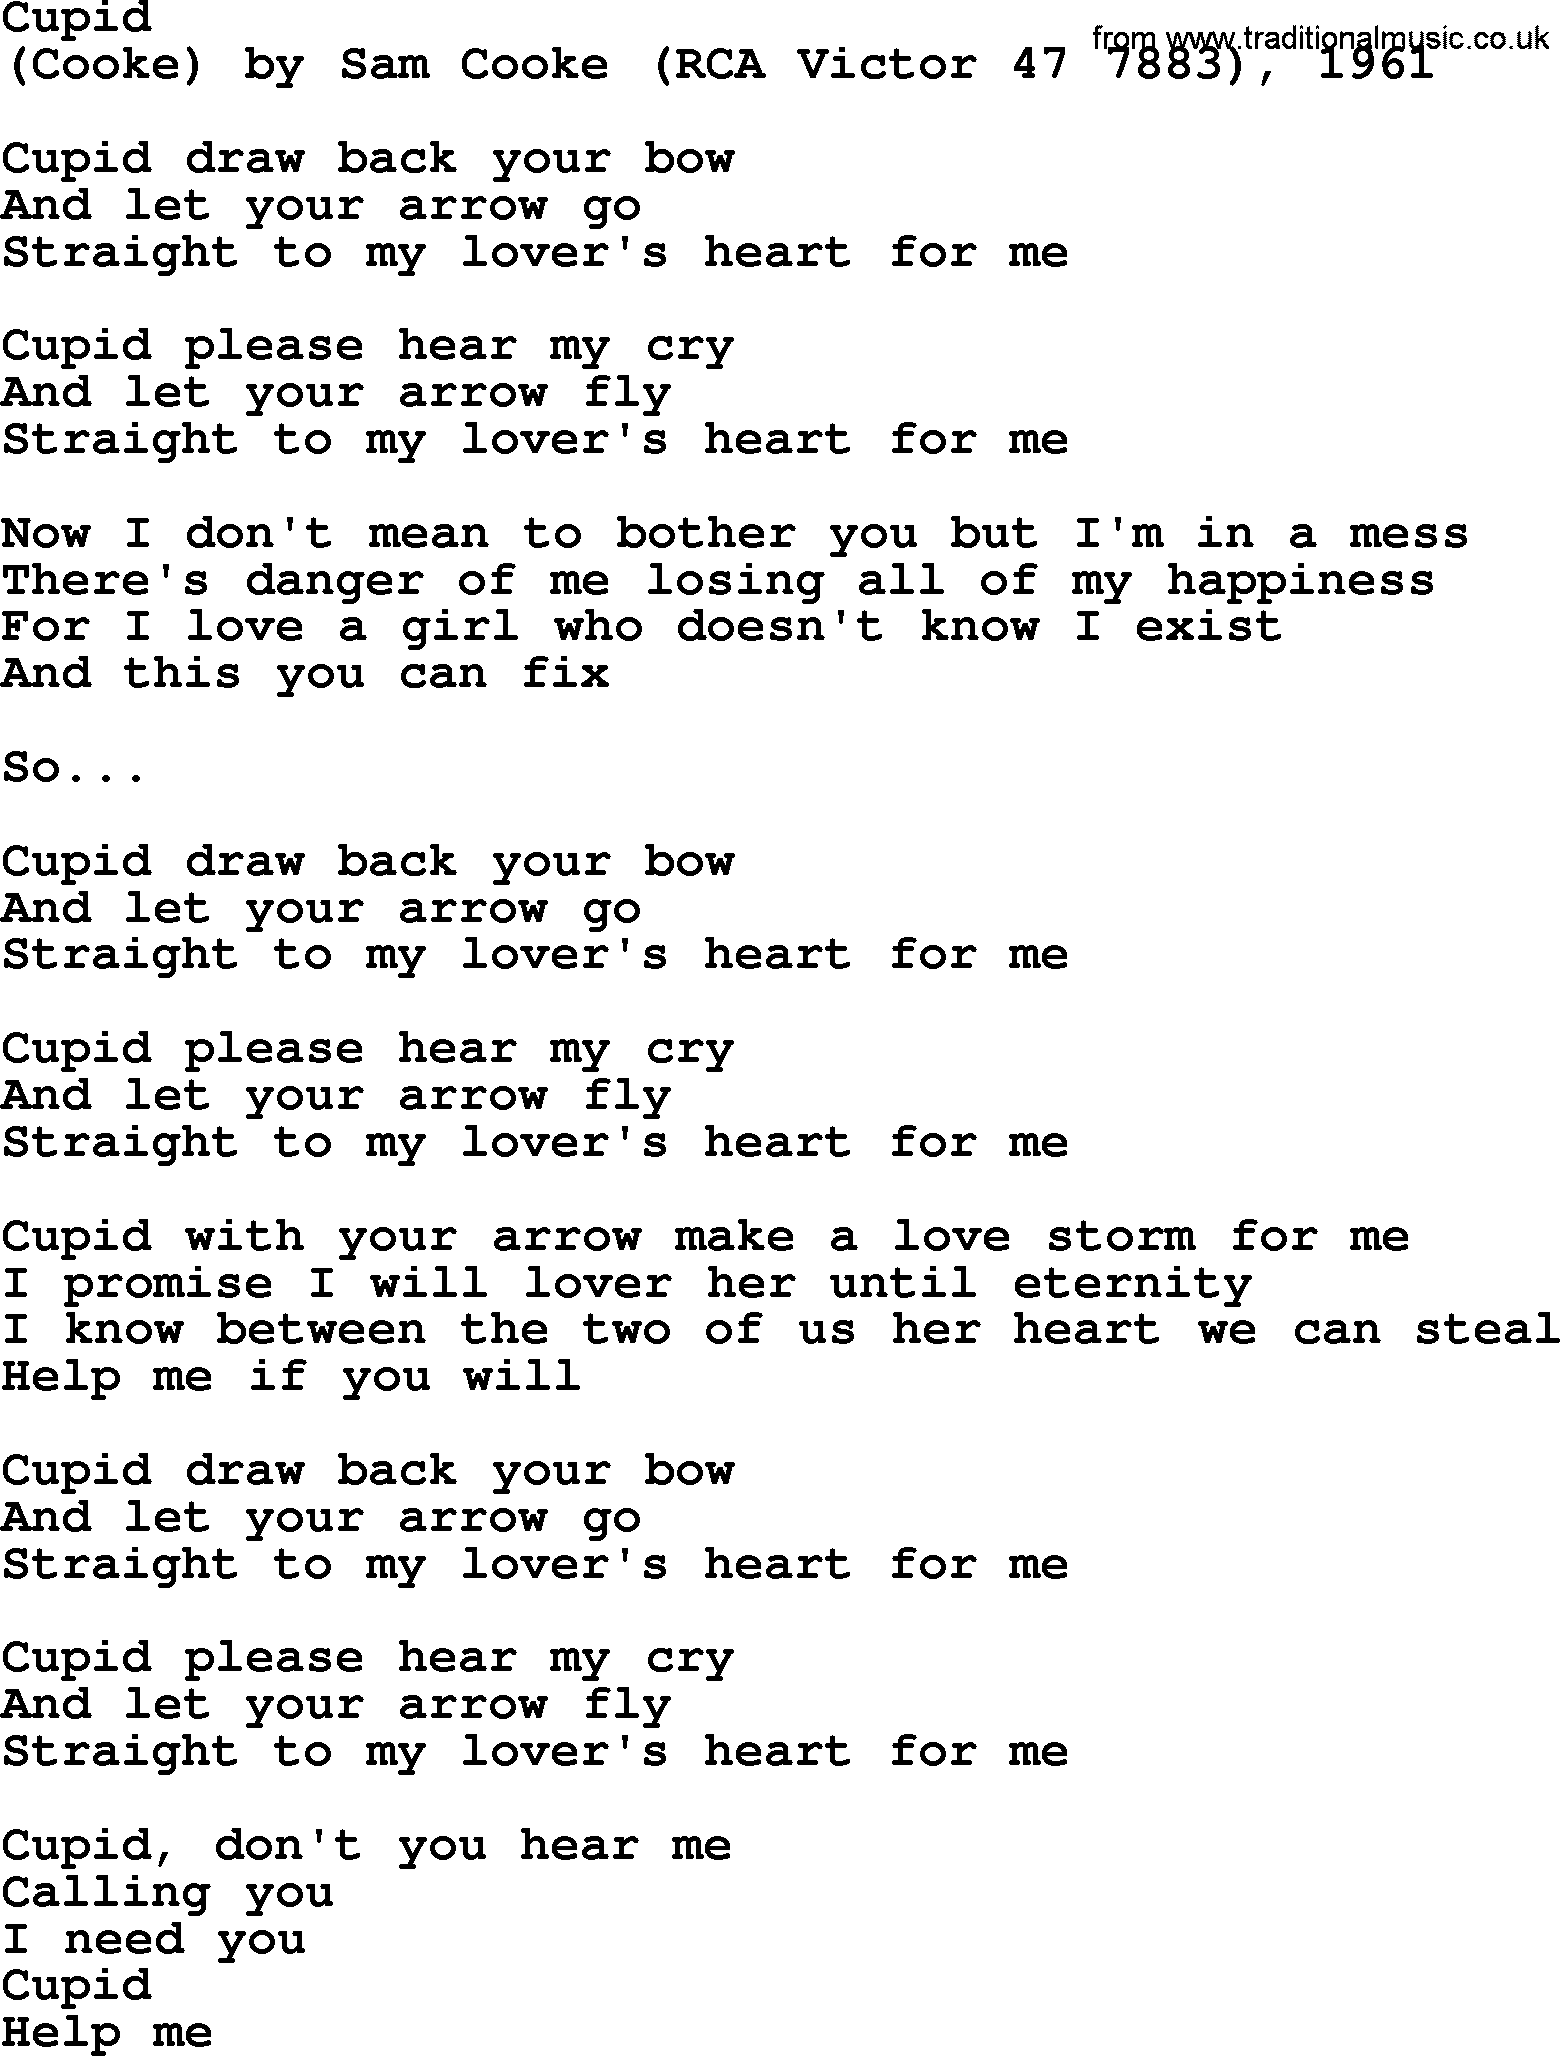 Bruce Springsteen song: Cupid lyrics